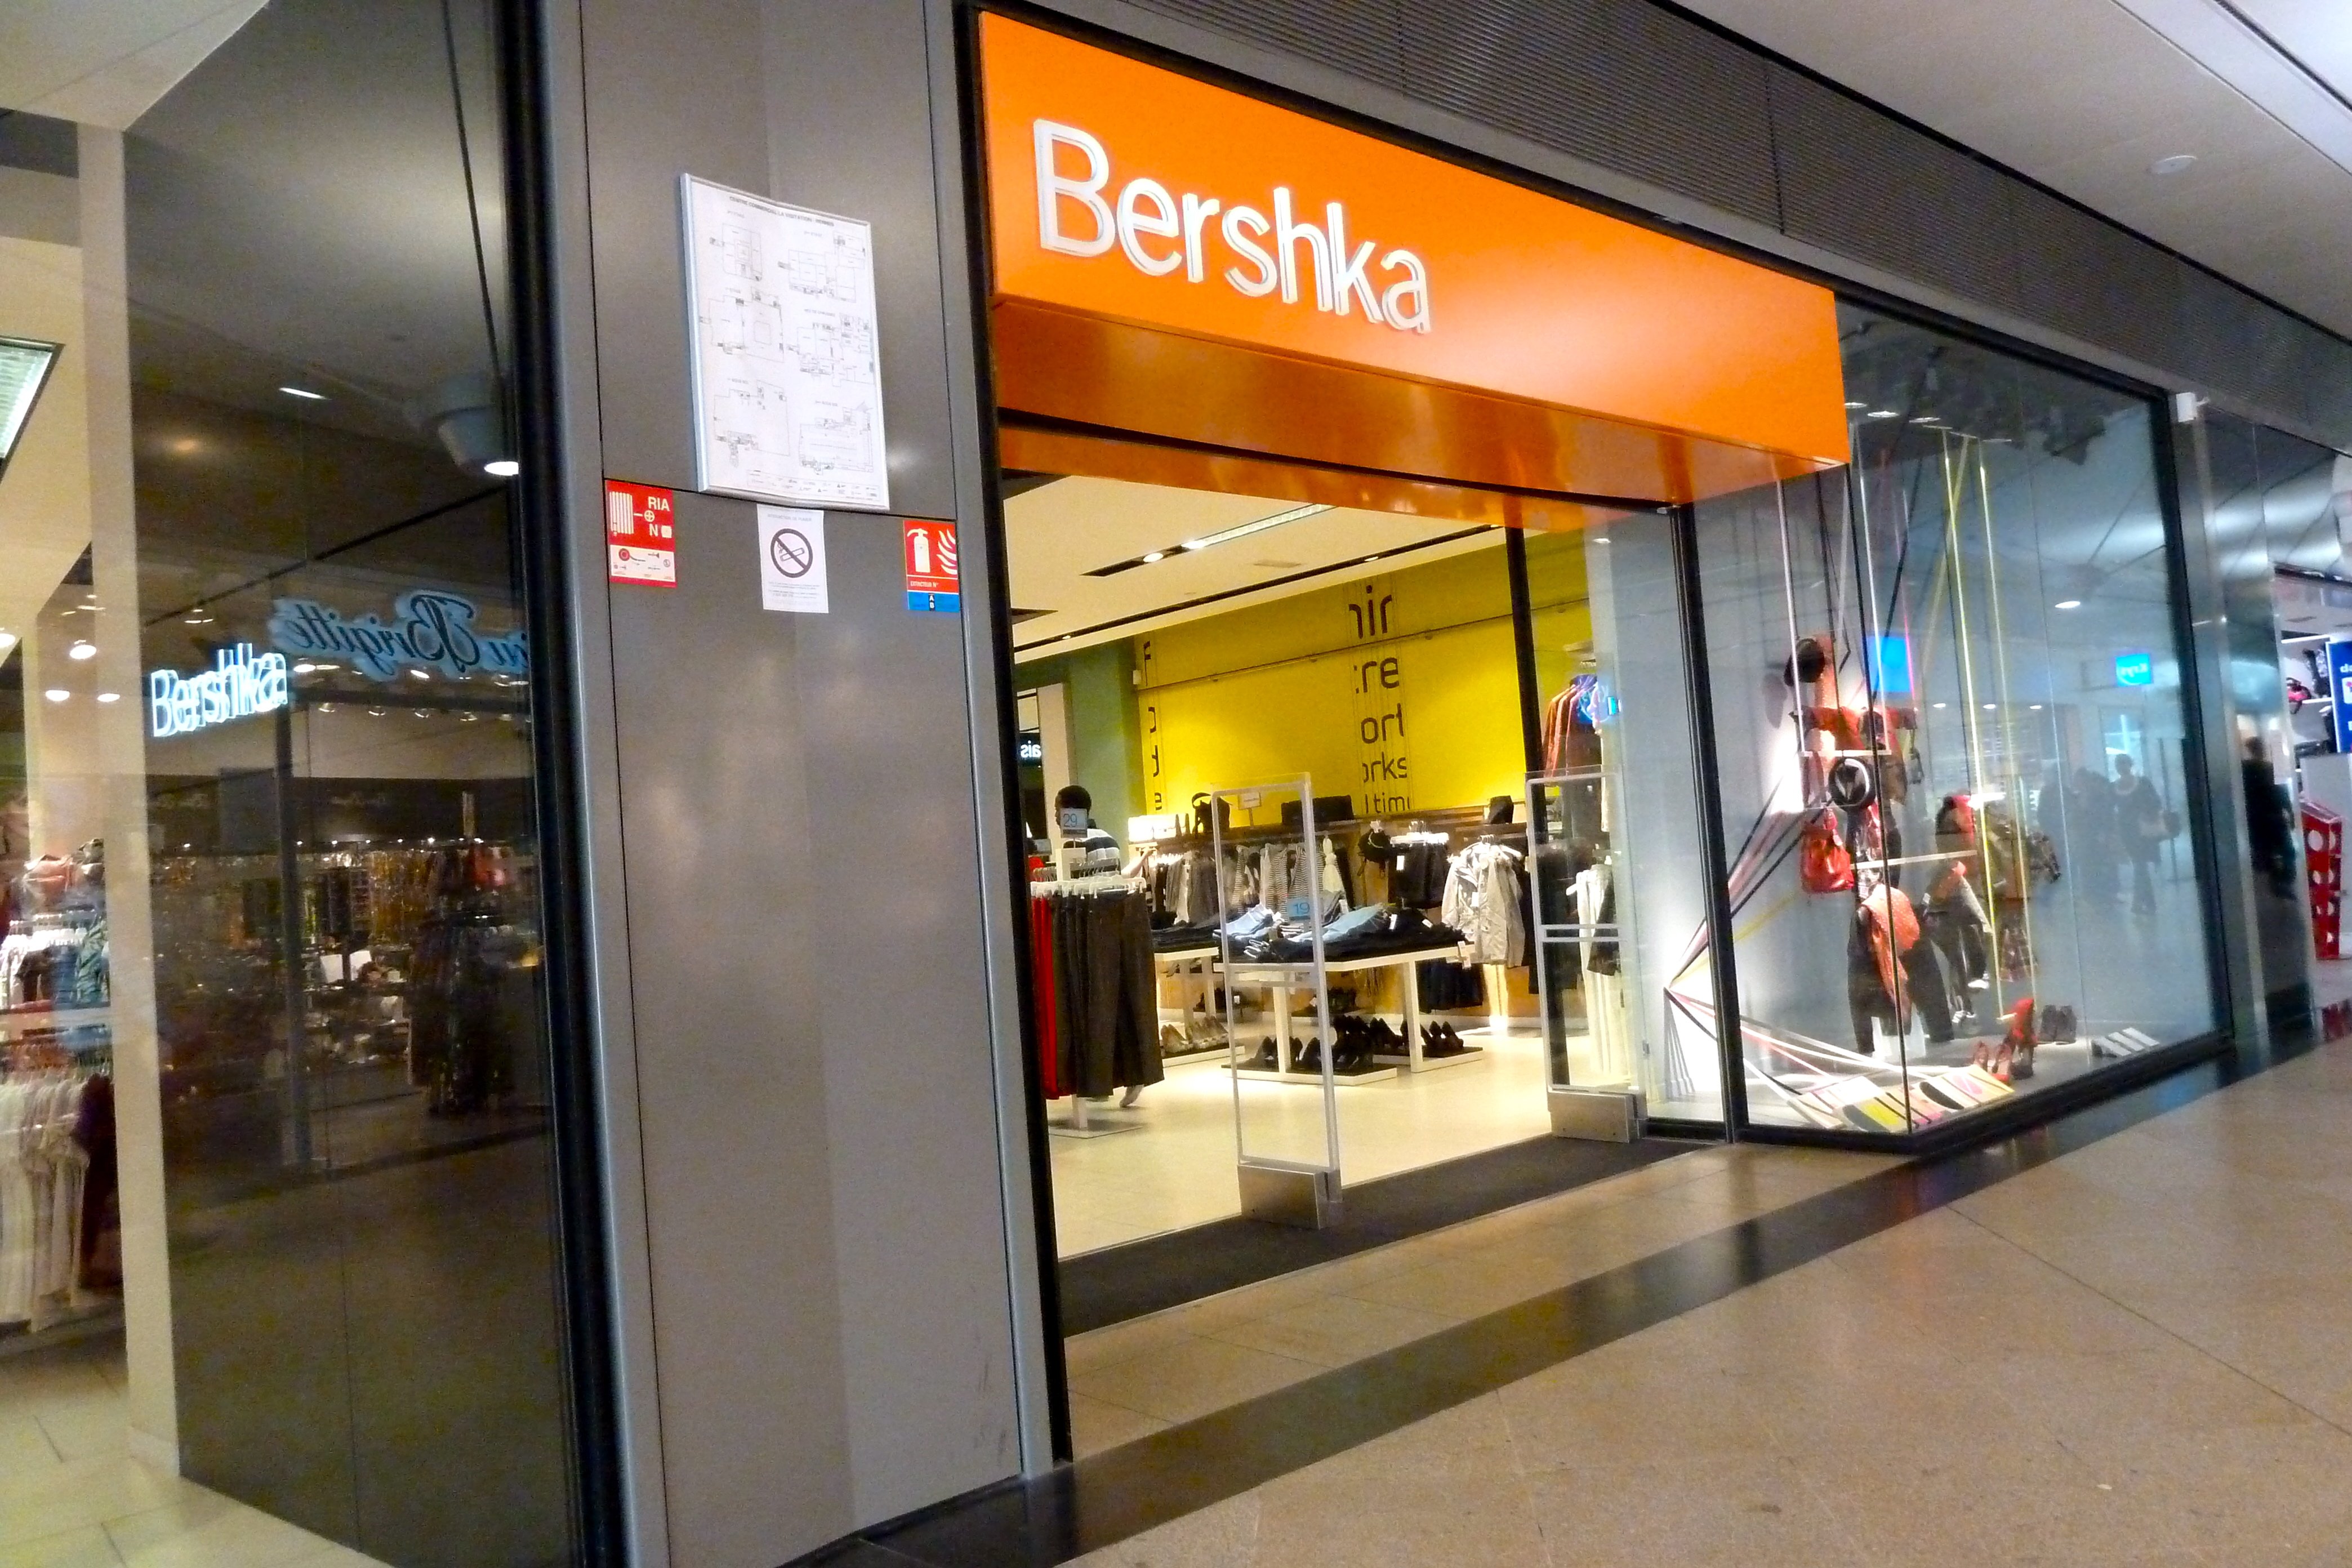 Els pantalons straight en lli amb cintura de goma en 4 colors són el més venut a Bershka